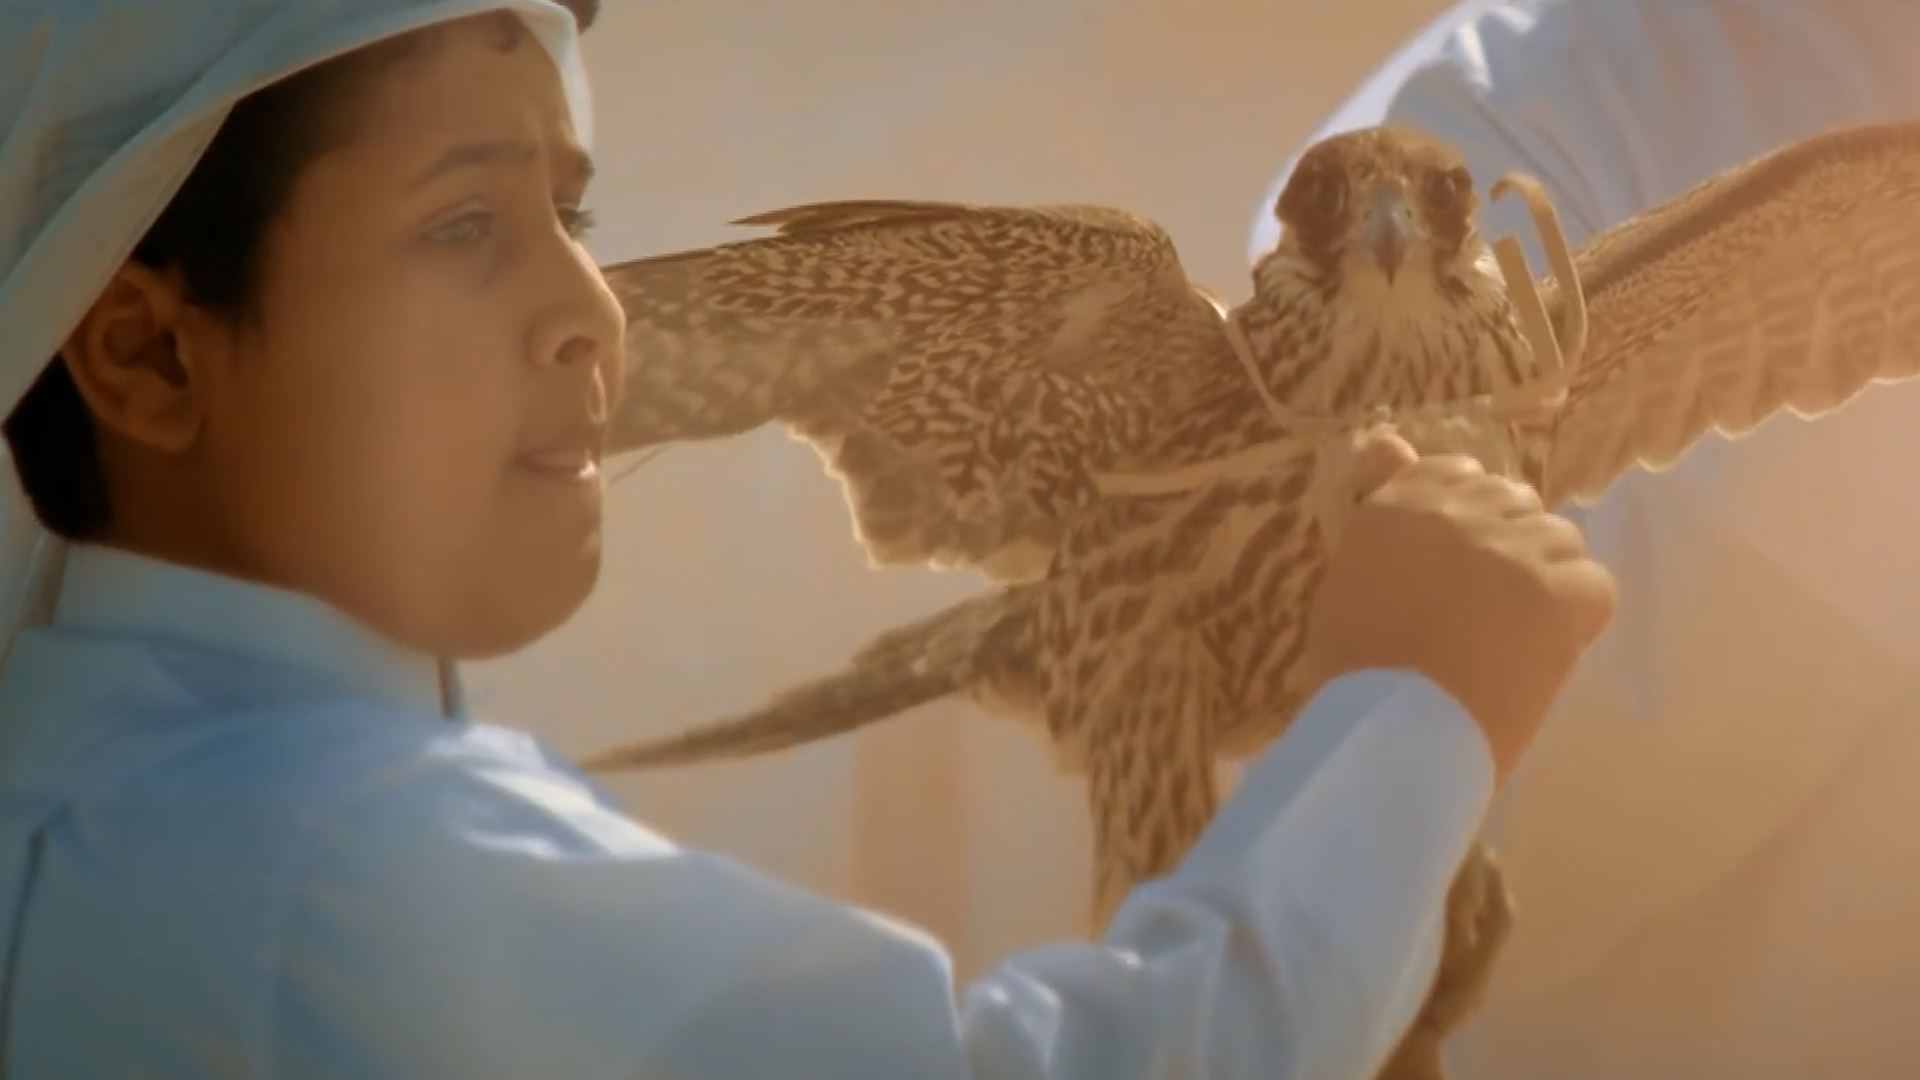 Μουντιάλ του Κατάρ: Παιδιά παρουσιάζουν στους επισκέπτες την αρχαία παράδοση της γερακοτροφίας (video)